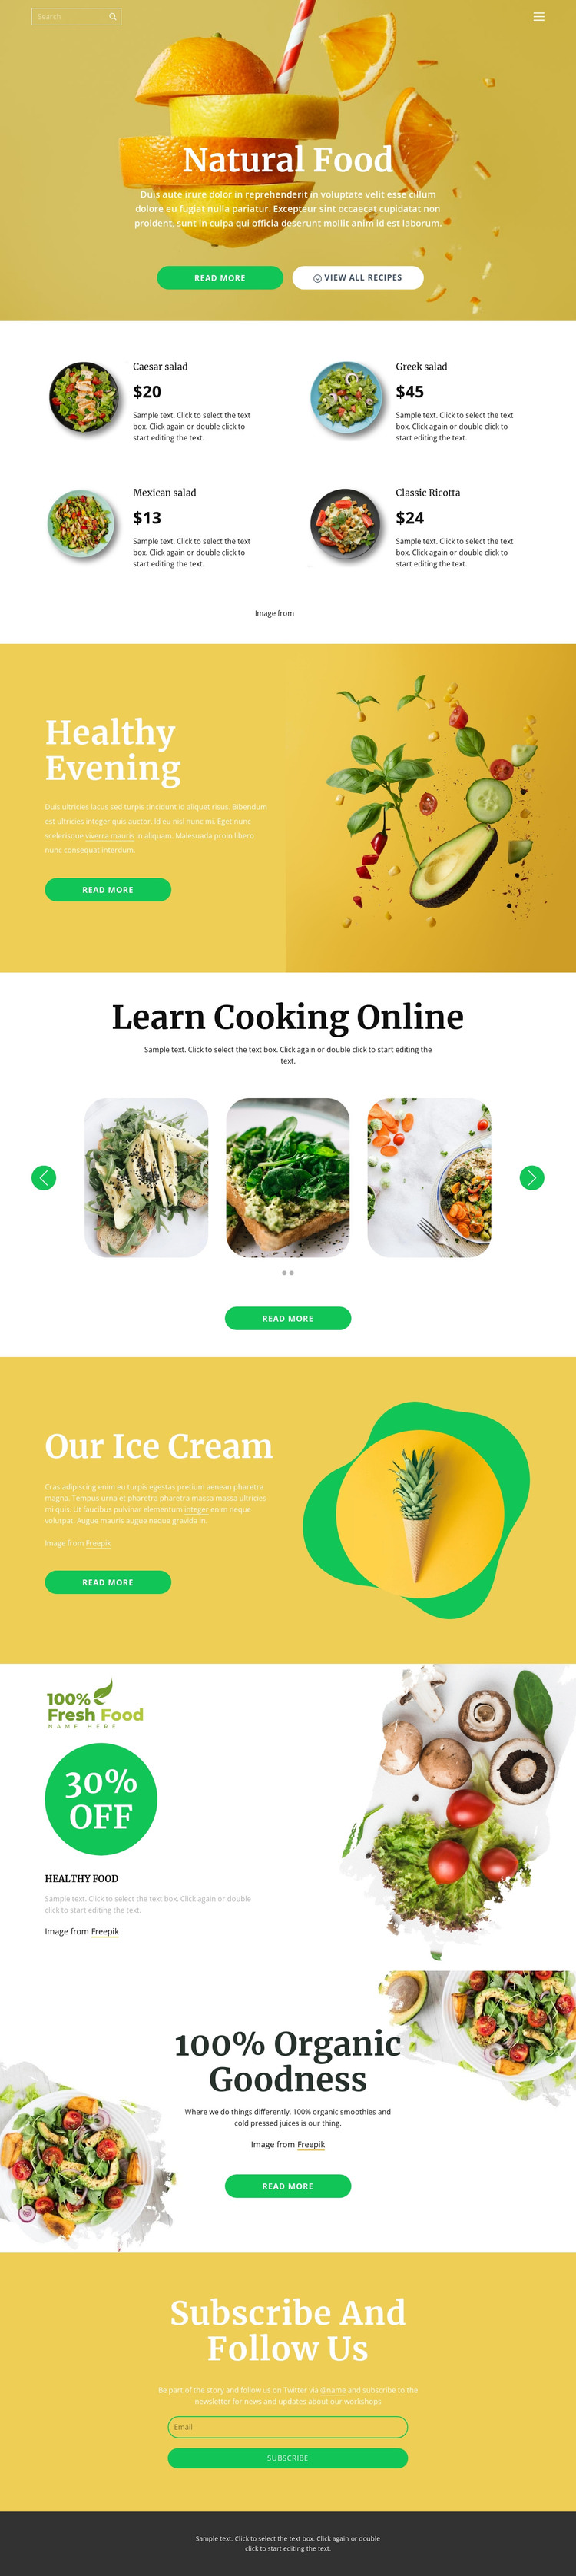 Delicious and healthy food Web Design